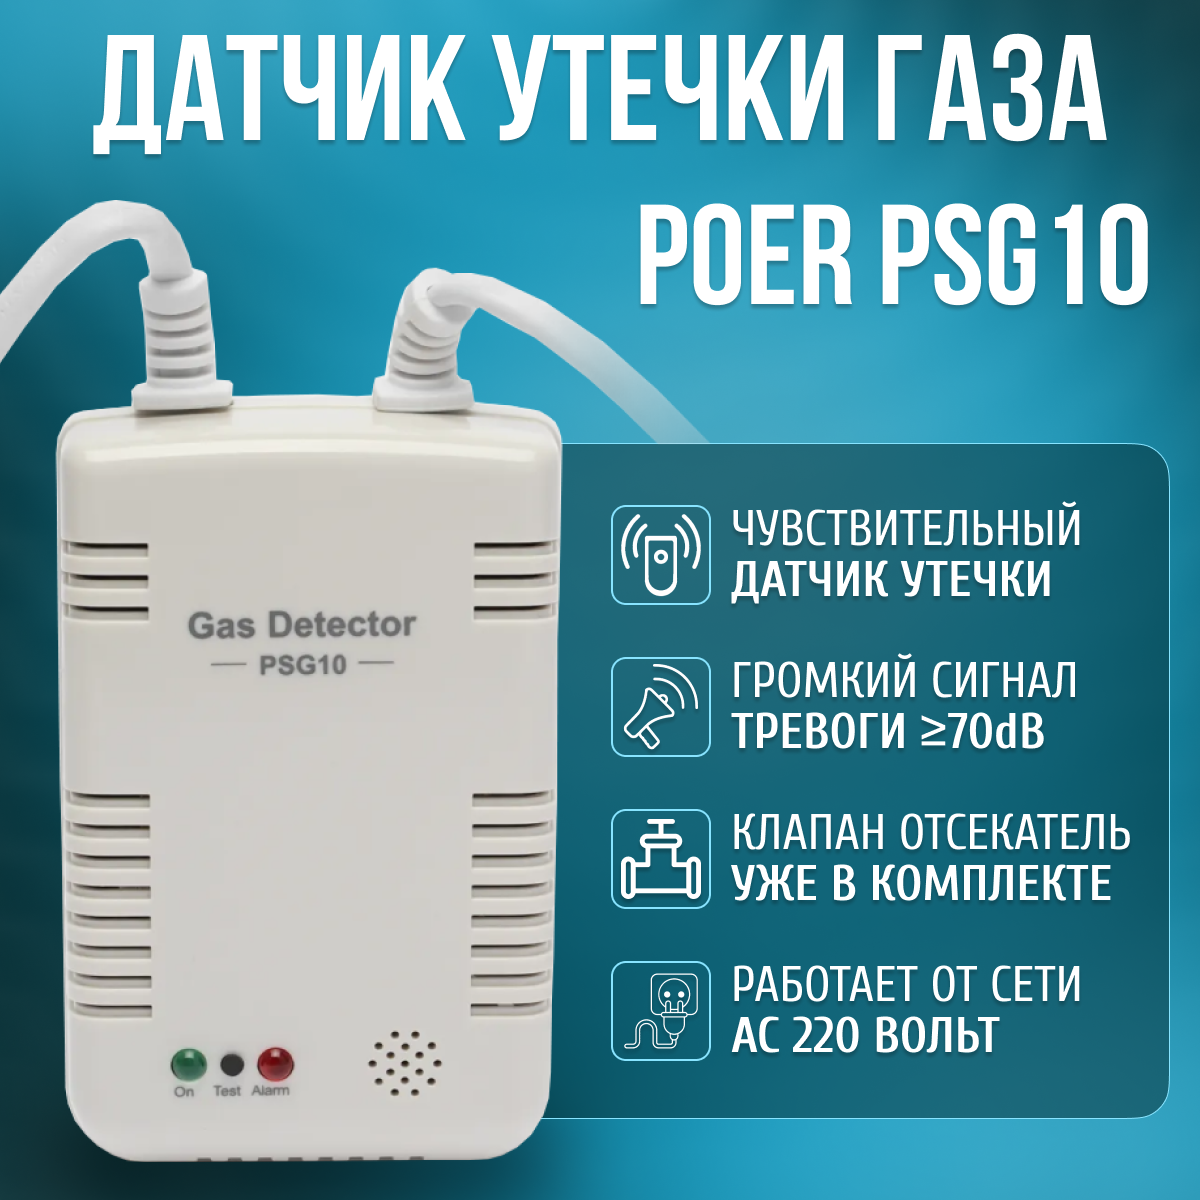 Газоанализатор Poer PSG10 с возможностью дистанционного управления и сигнализации